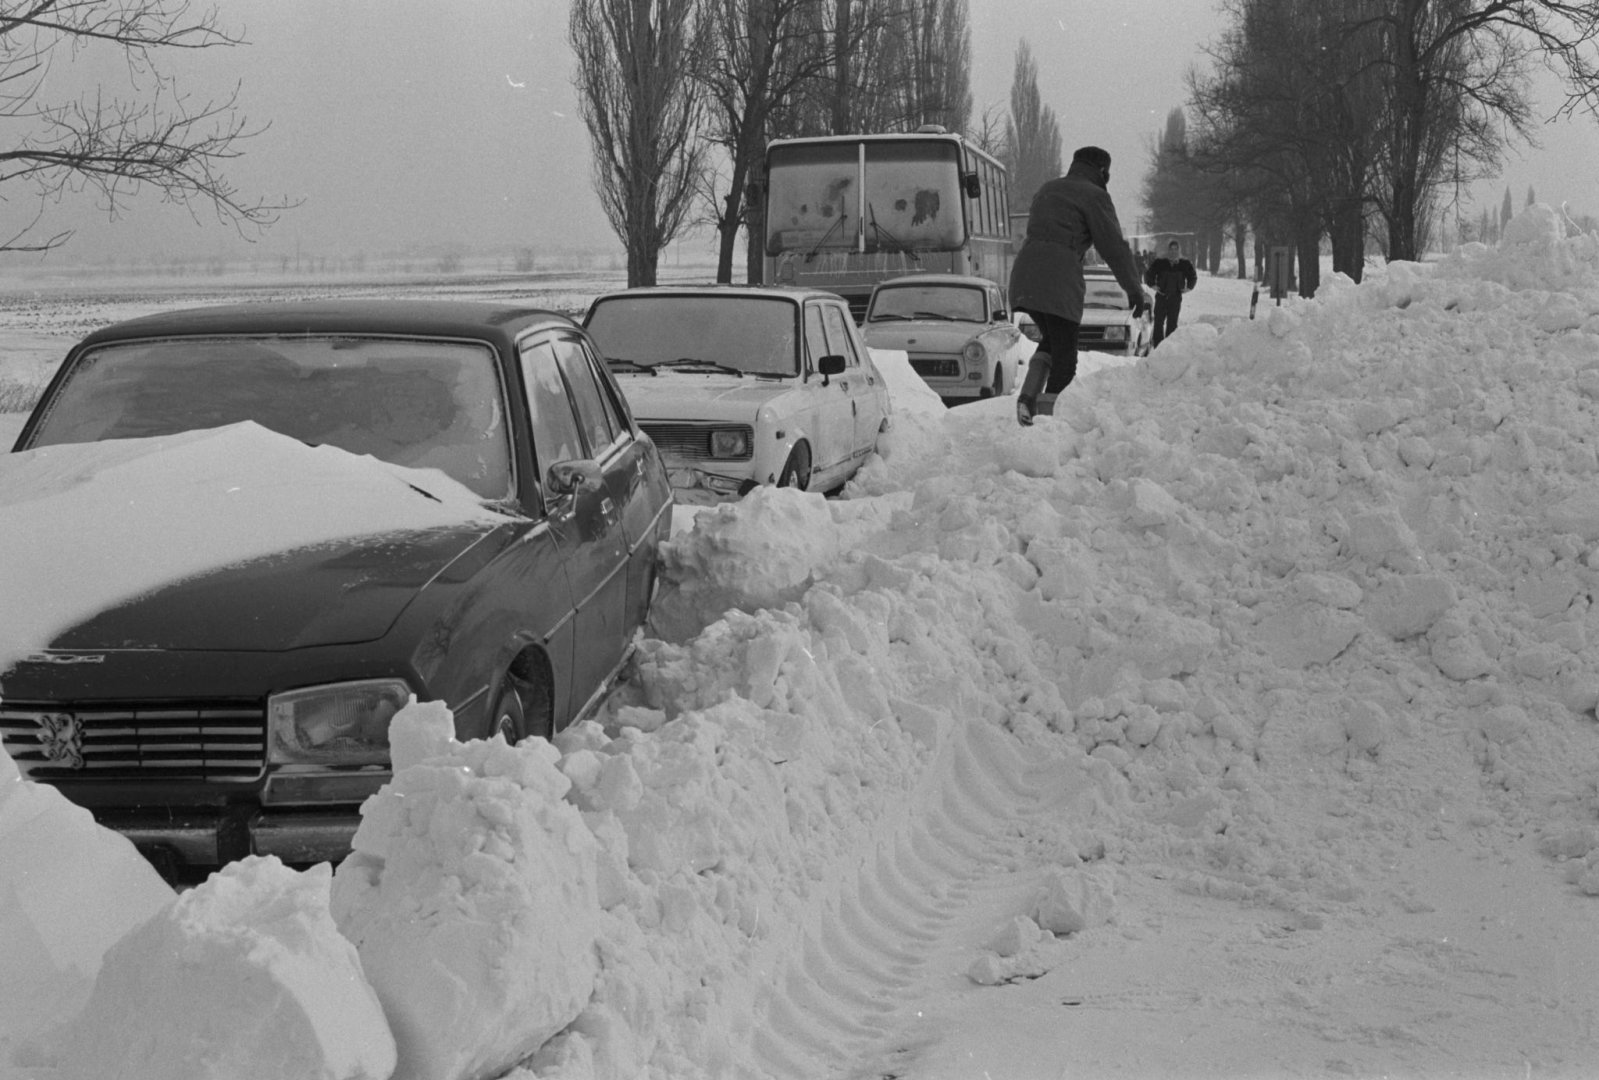 Székesfehérvár, 1987. január 14. Hét busz és számos személyautó vesztegelt a 62-es főúton, Fehérvár határában. többen fagyásos sérüléseket szenvedtek. Fotó: Fejér Megy